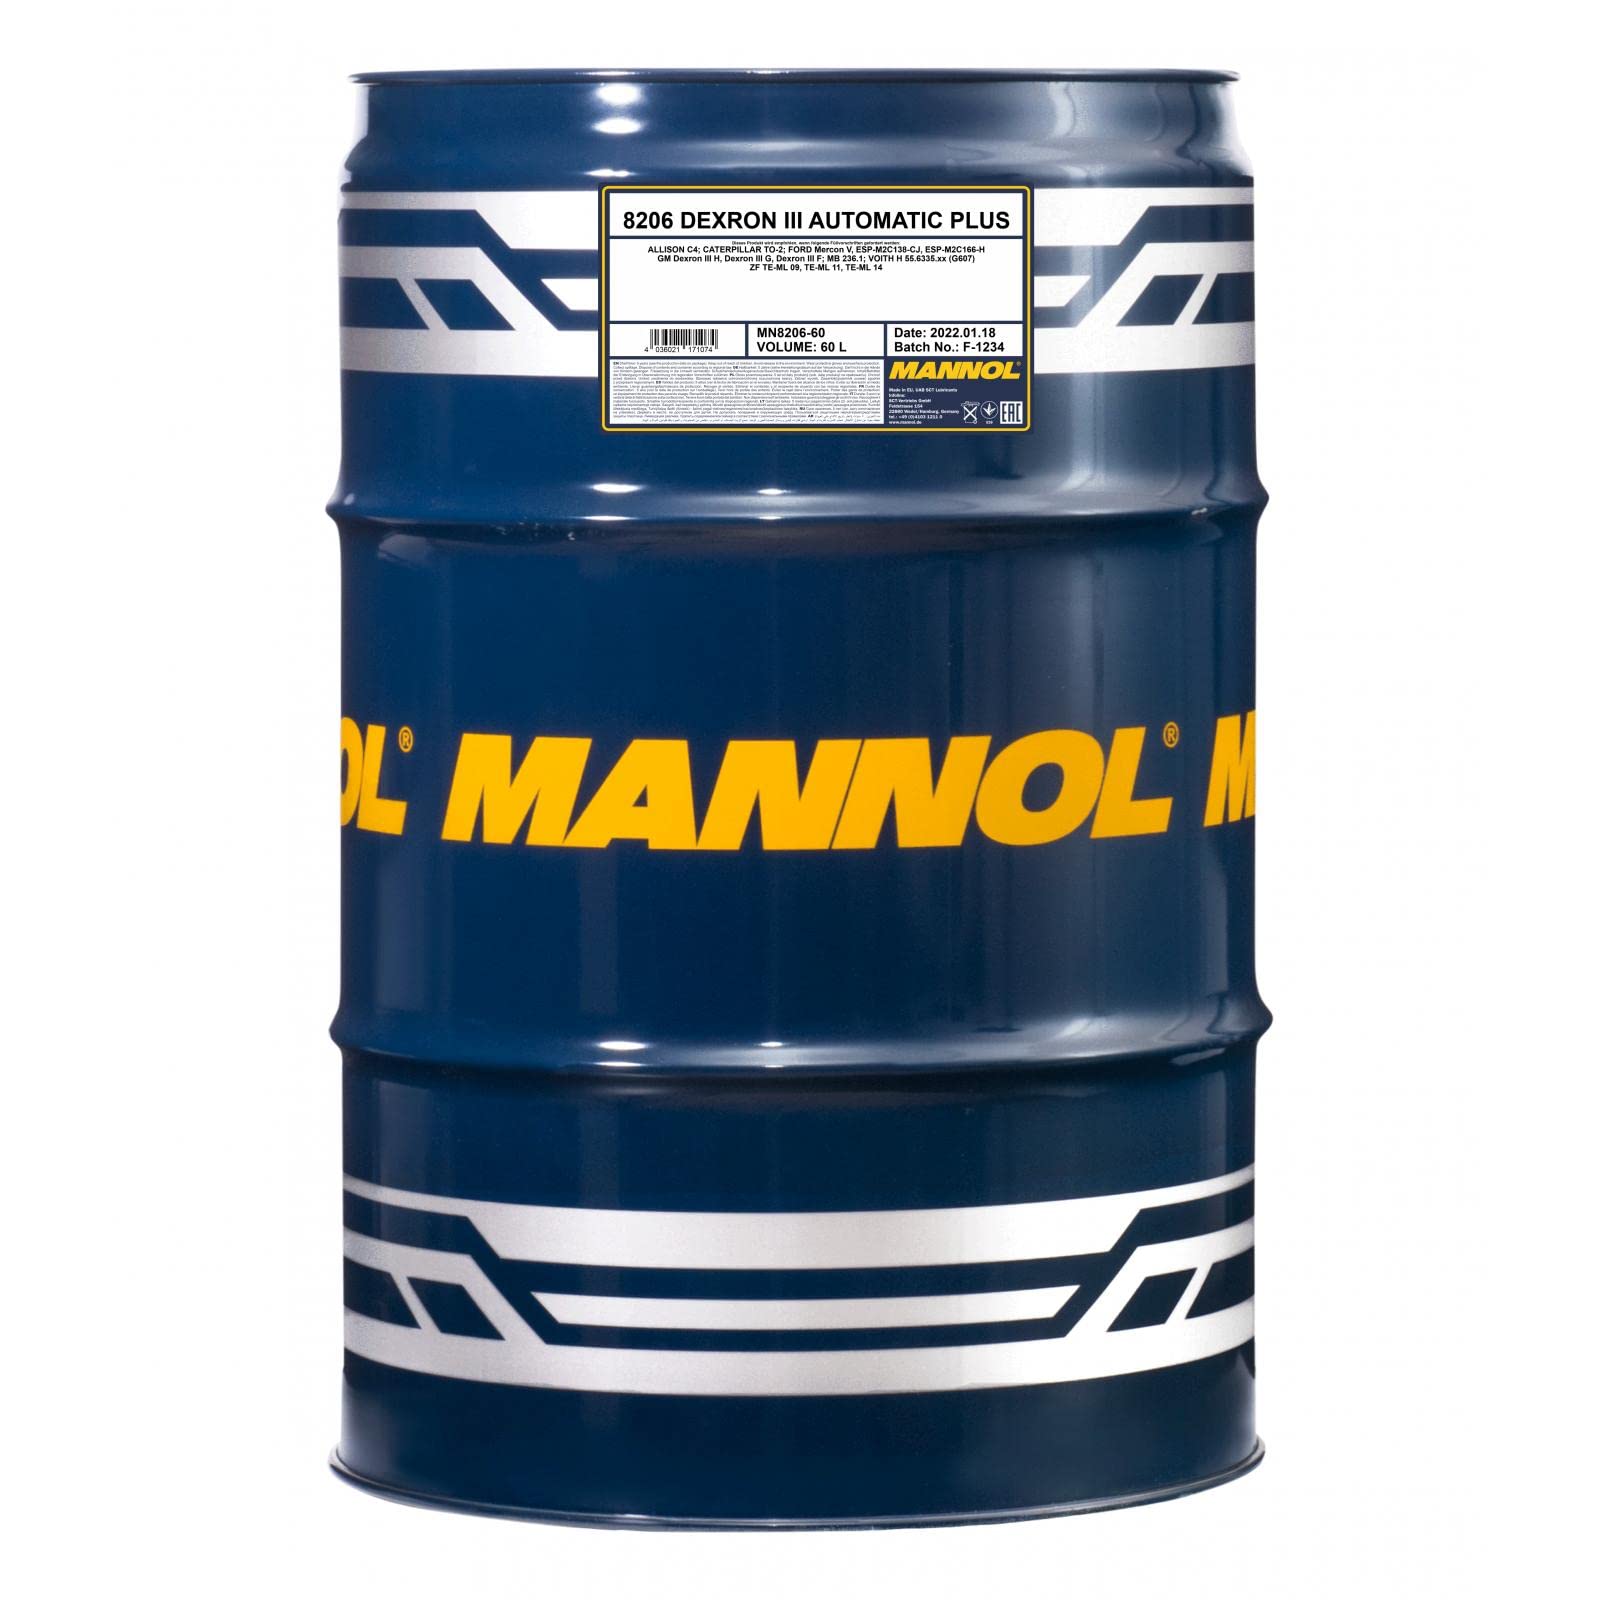 60 Liter Original MANNOL Automatikgetriebeöl Dexron III Automatic Plus Gear Oil von MANNOL